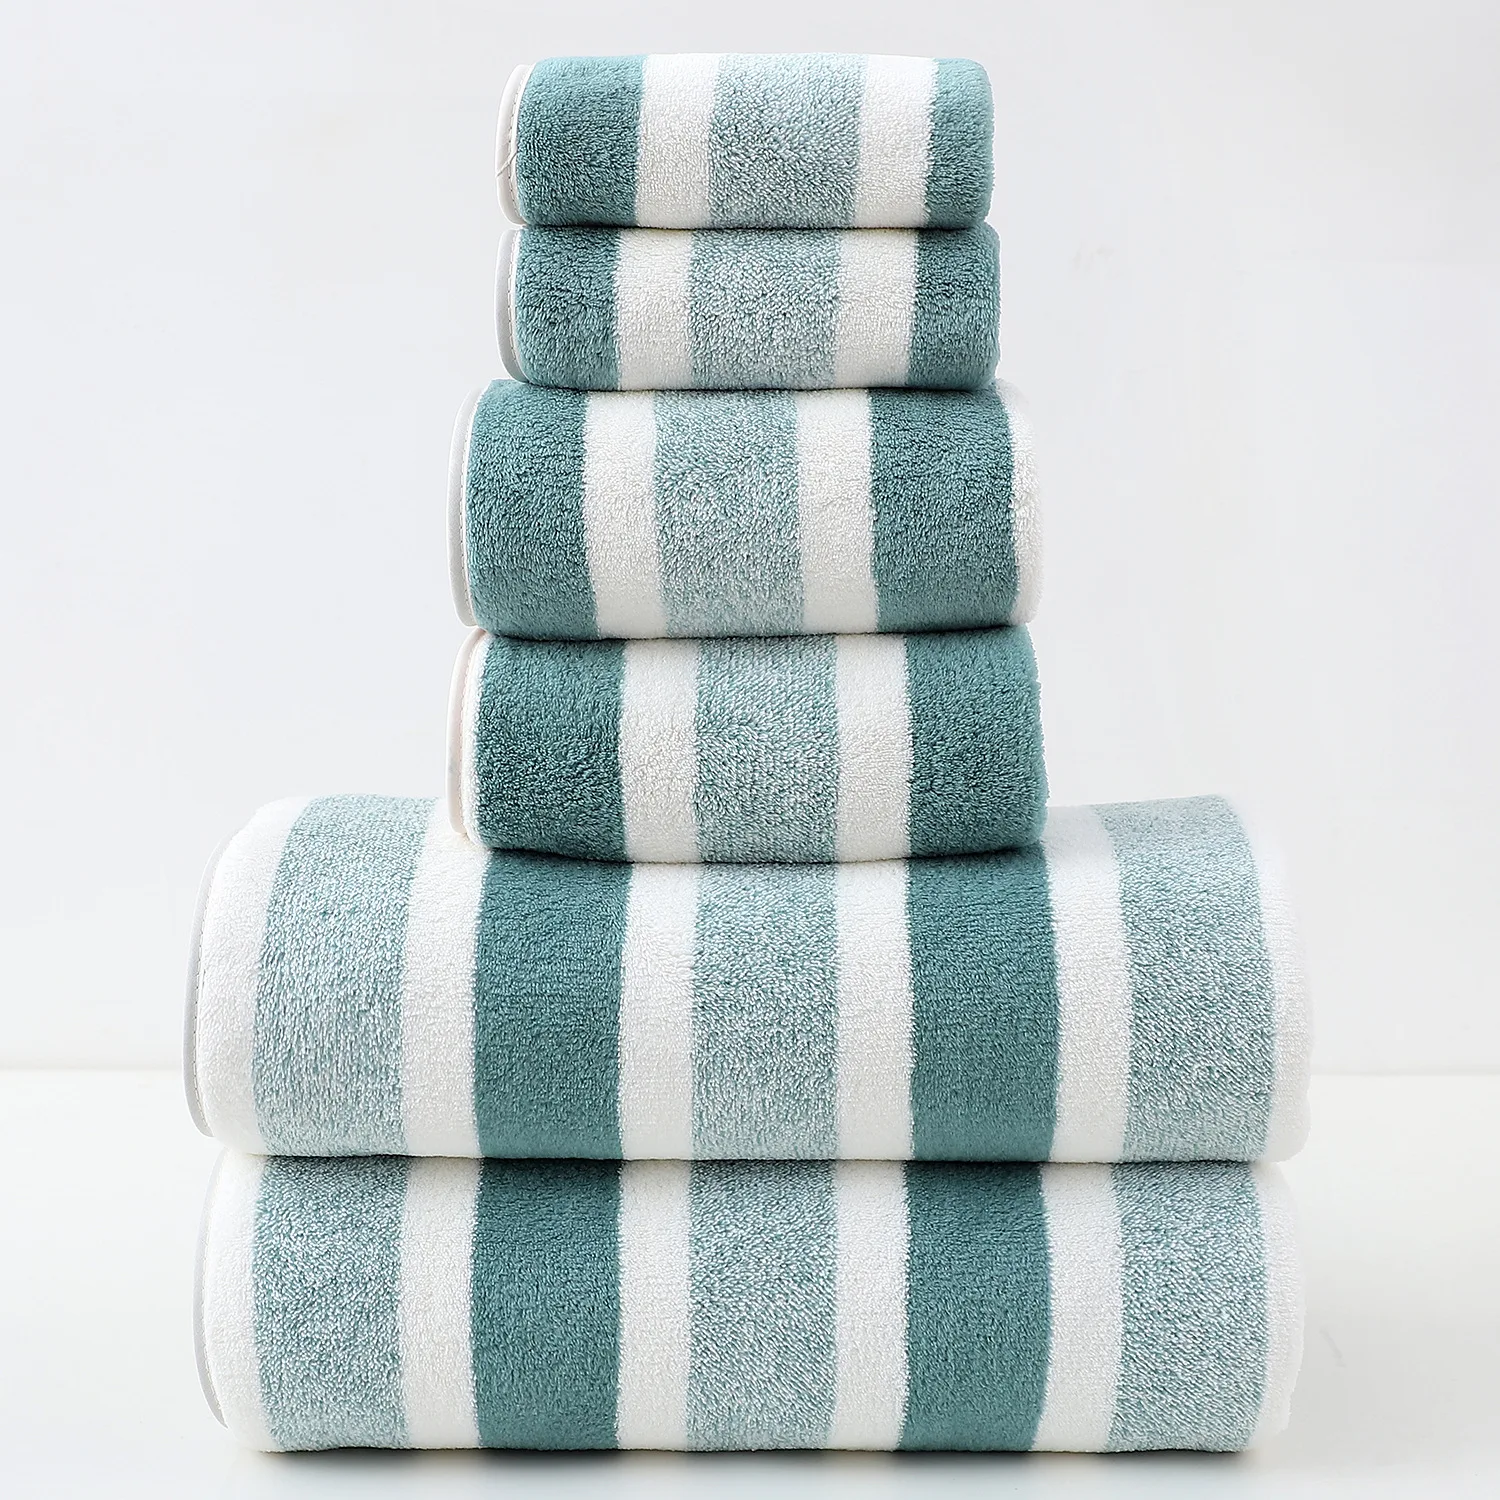 

Набор полотенец в полоску, 6 шт., быстросохнущие абсорбирующие полотенца для ванной комнаты, 2 банные полотенца, 2 полотенца для лица и 2 стирки, оптовая продажа